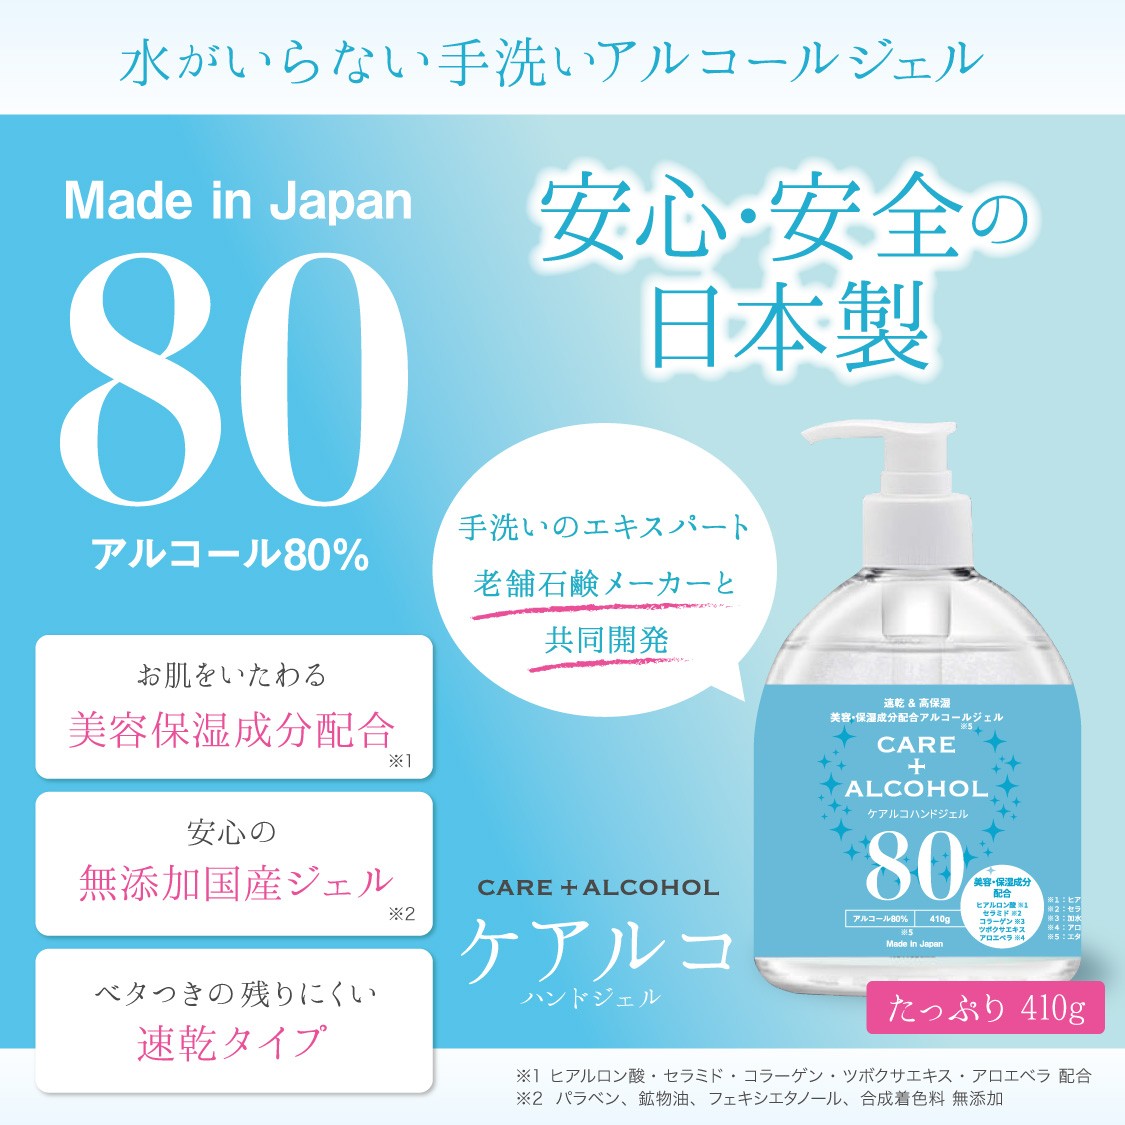 ハンドジェル アルコール除菌ジェル 消毒液 消毒 濃度 80% 保湿 ケアルコ 410g 日本製